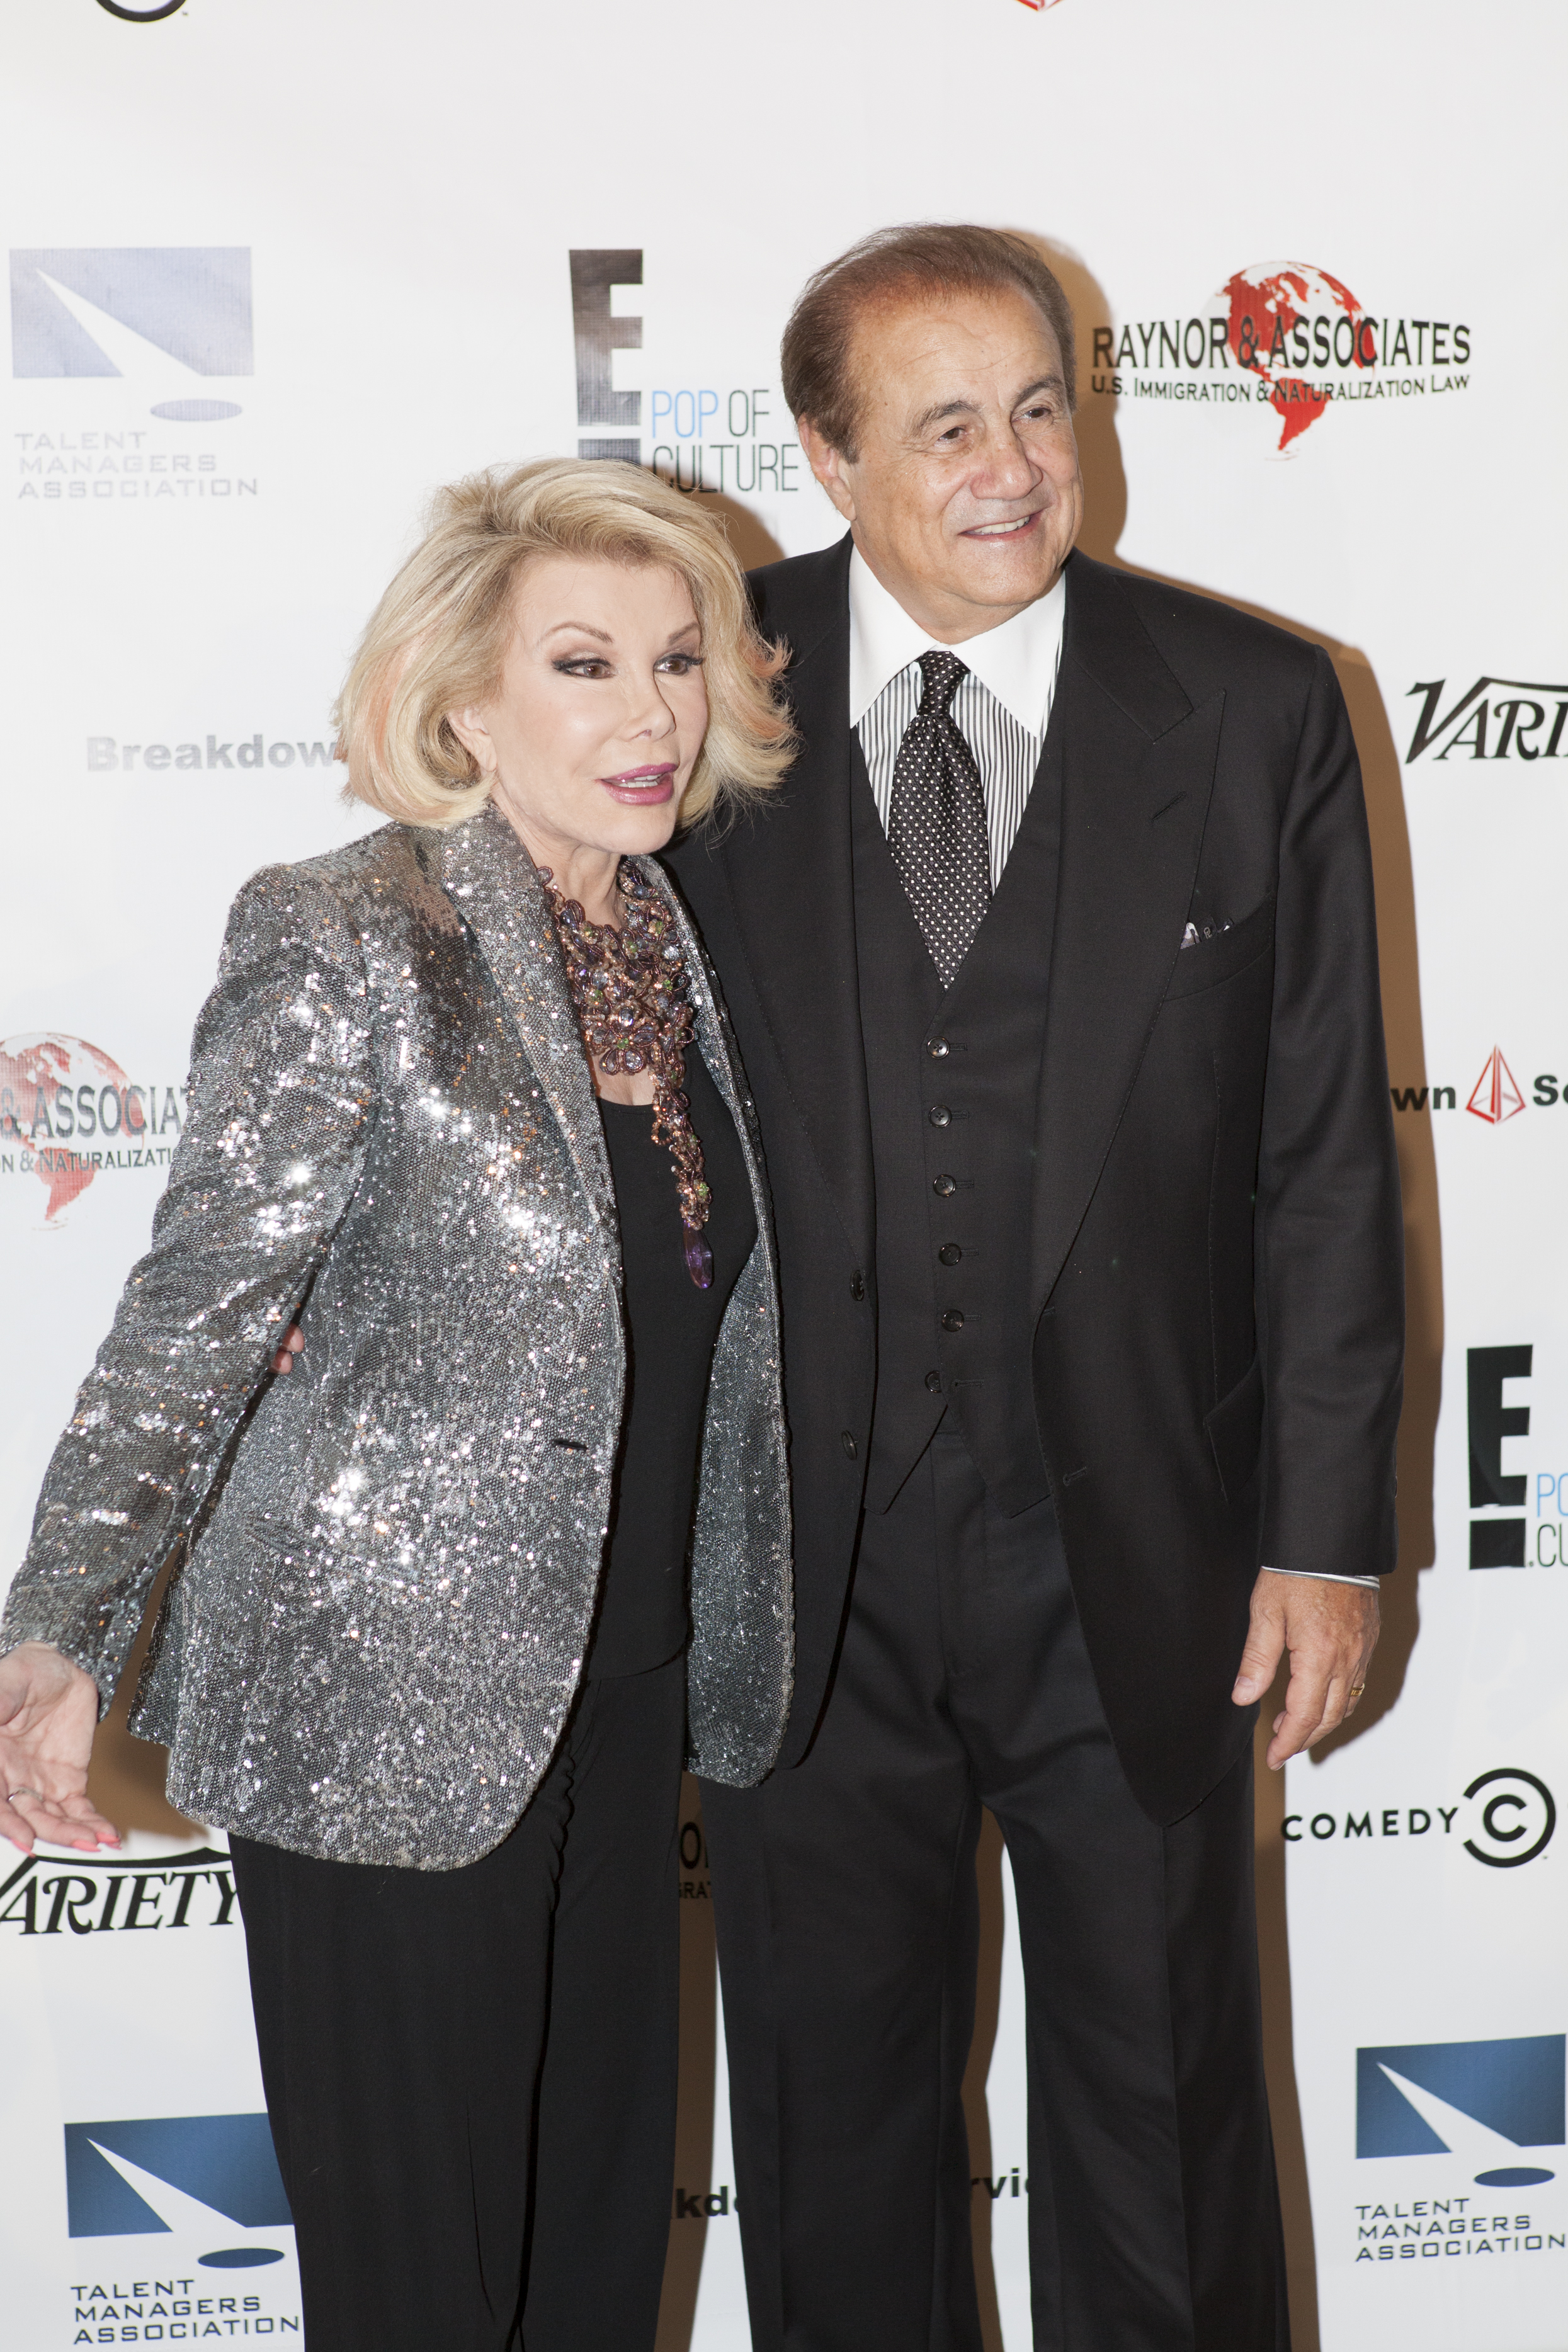 Joan Rivers and Larry Thompson at Heller Awards - TMA Heller Awards - September 19, 2013